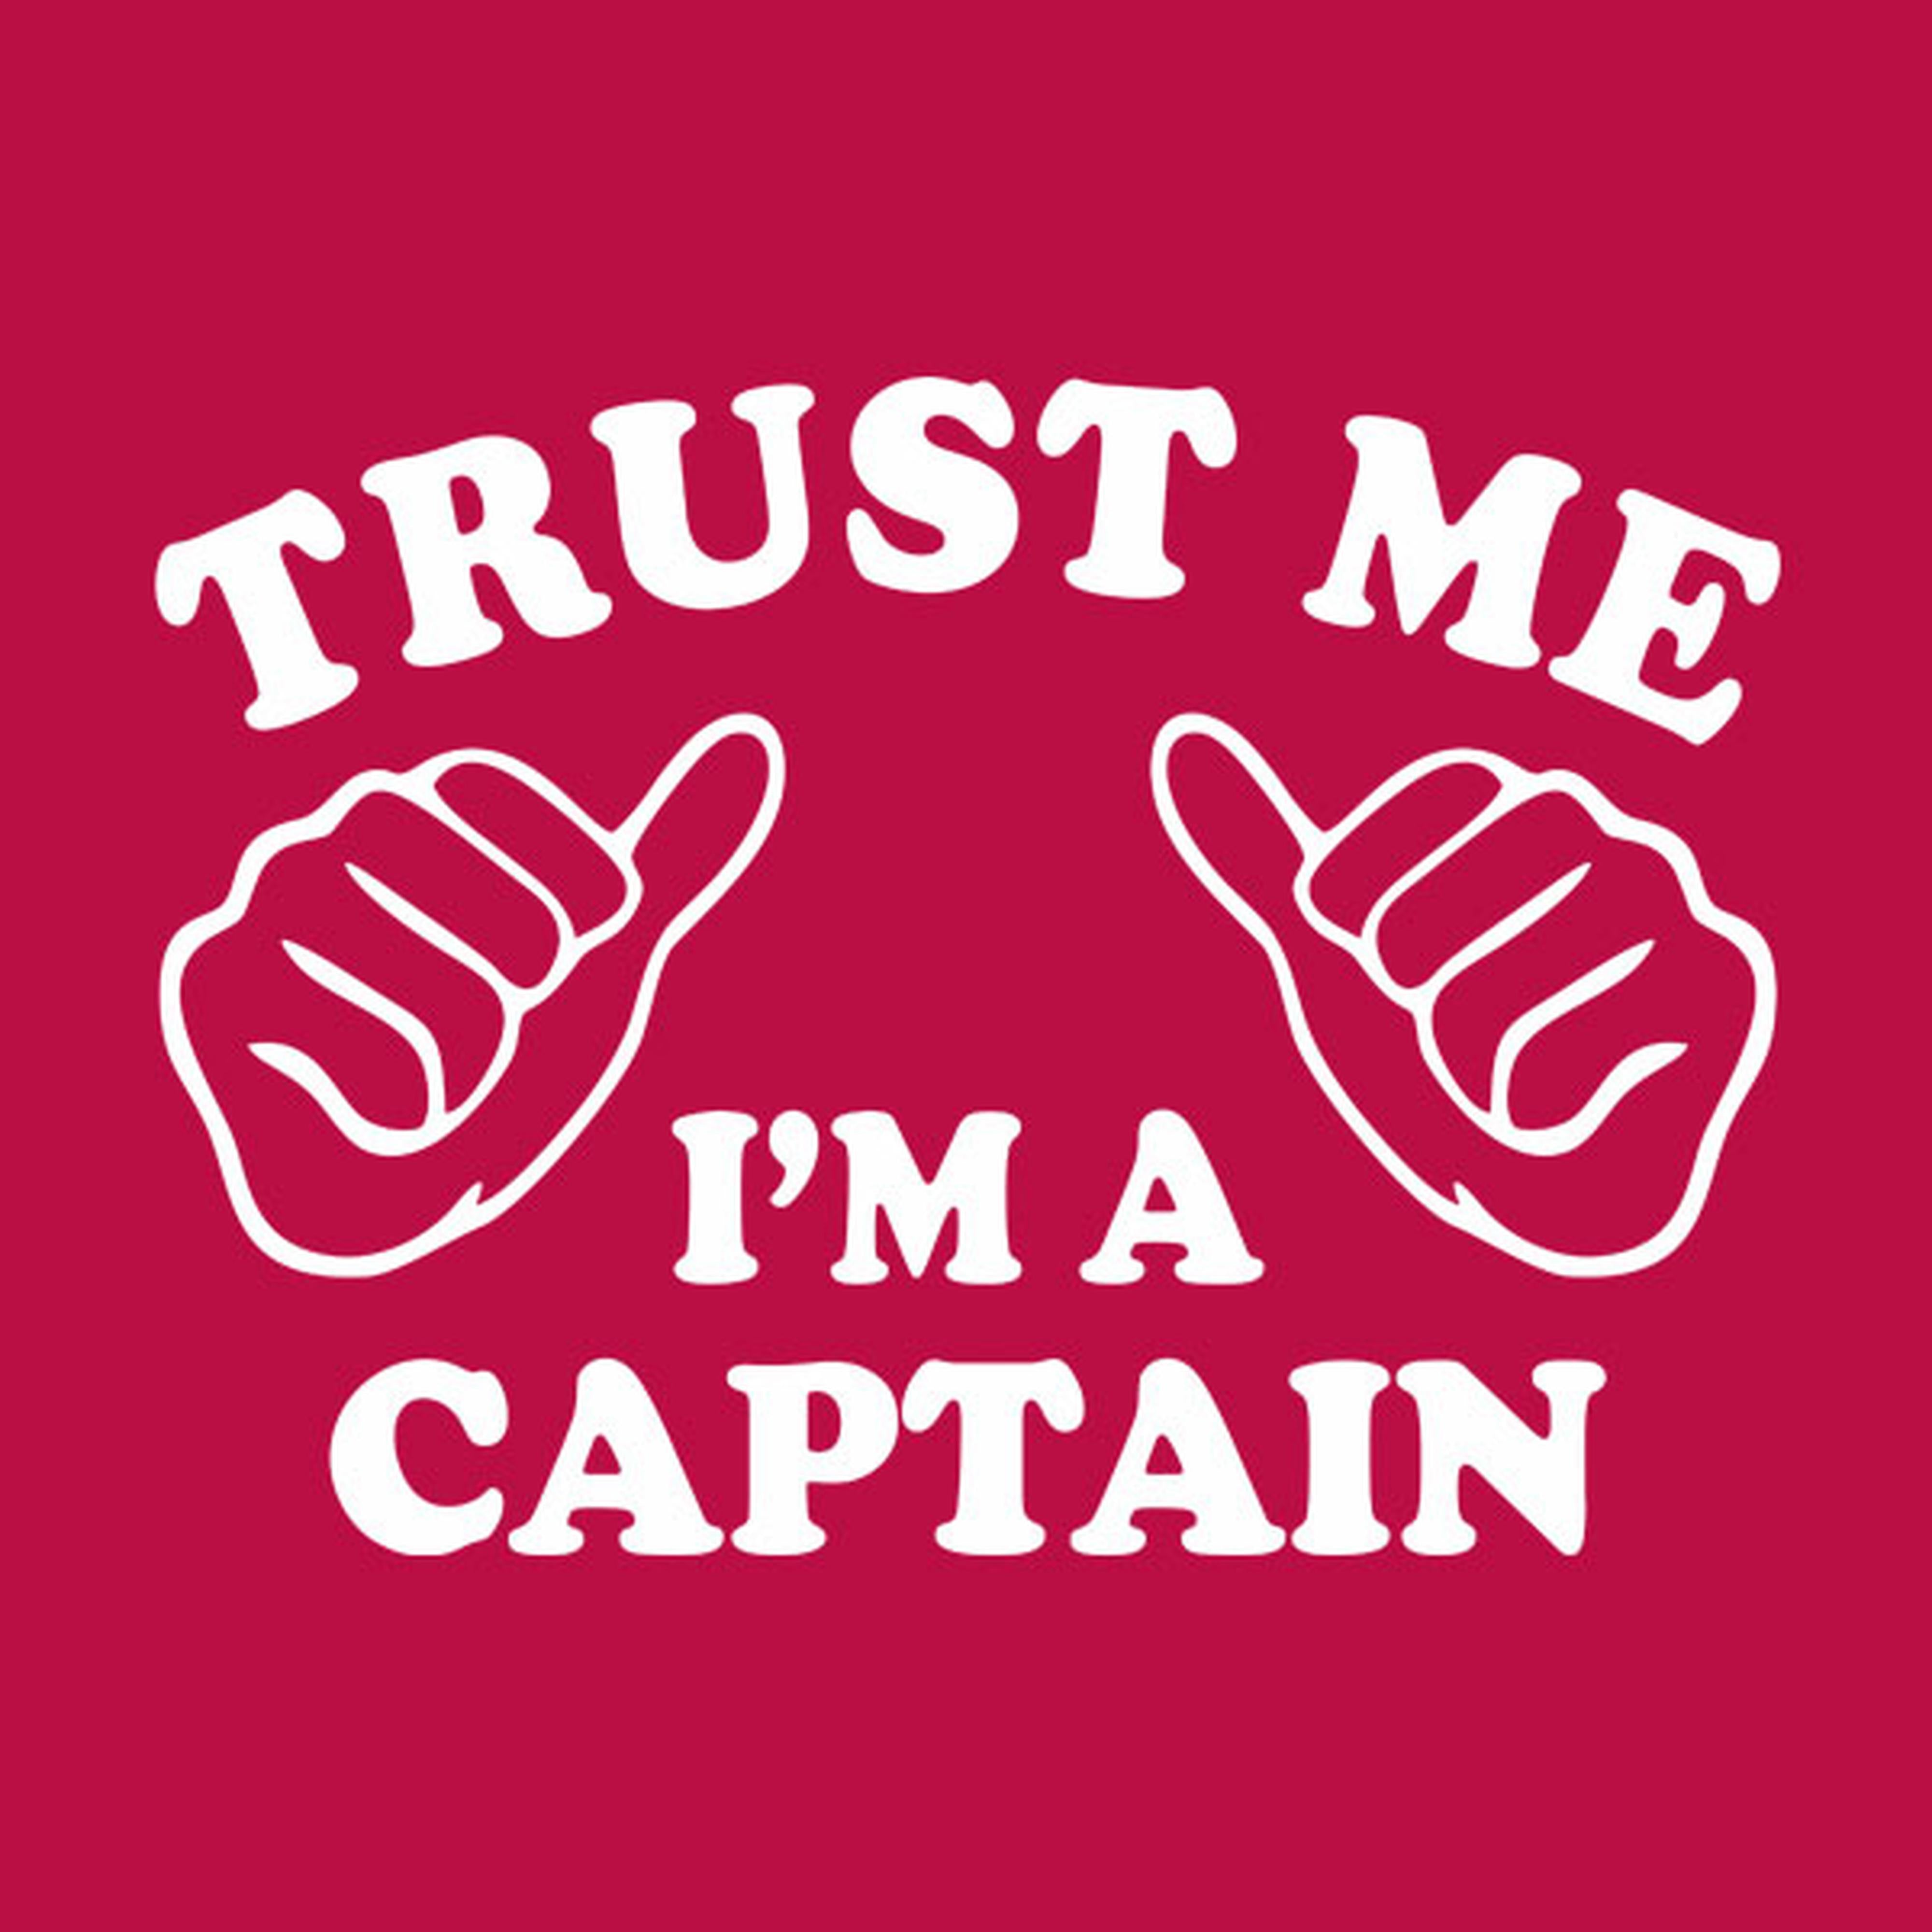 Trust me - I am a captain - T-shirt